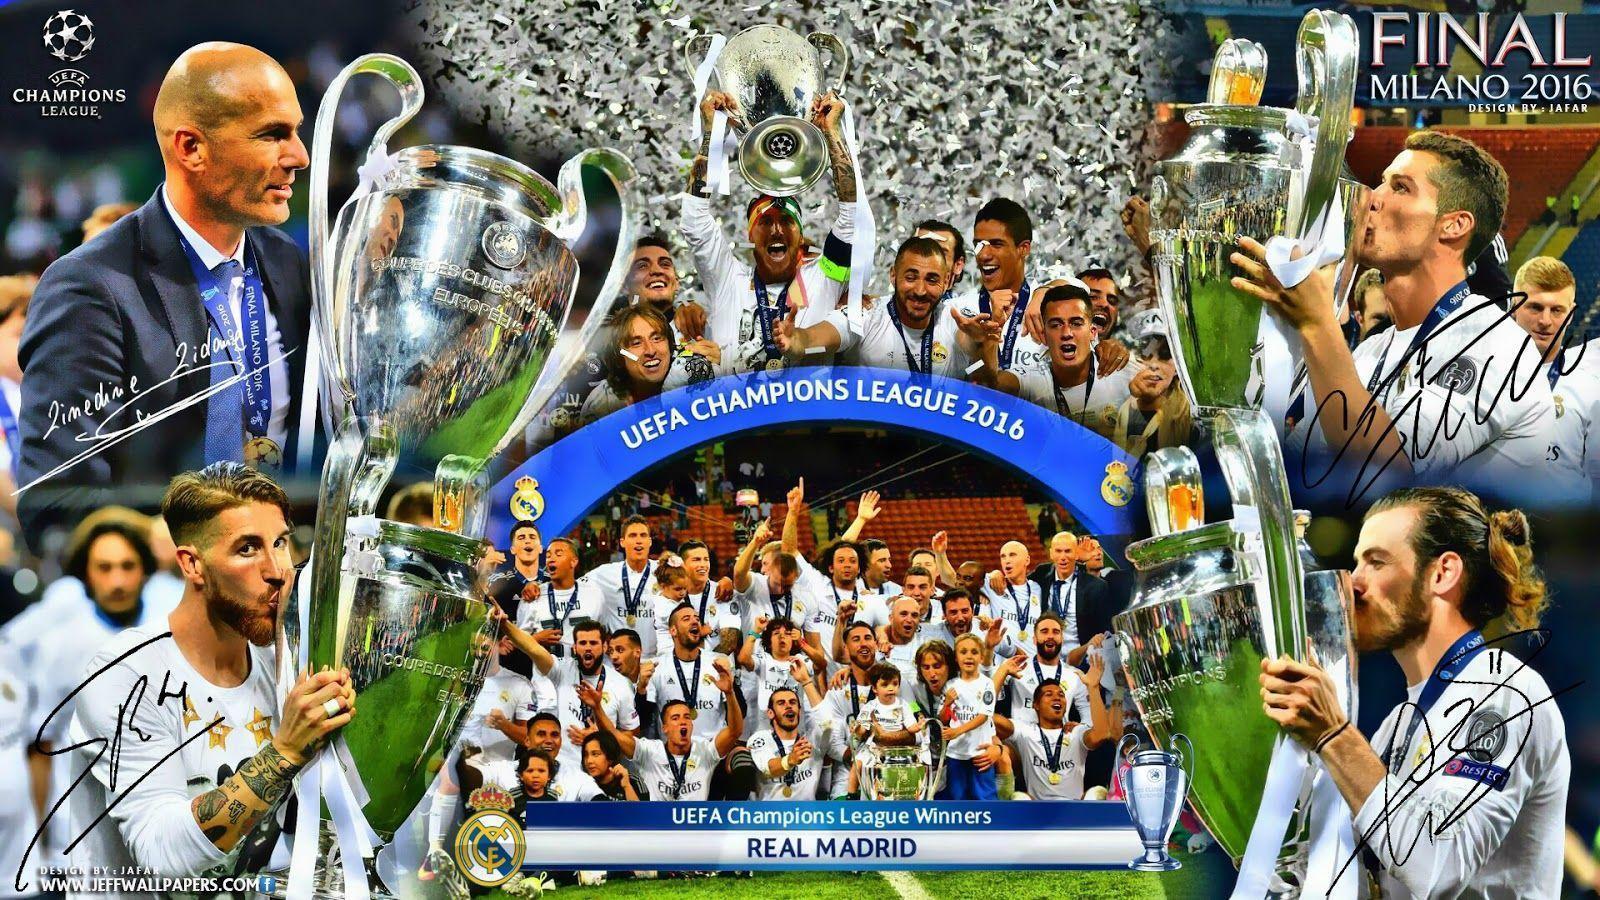 Wallpaper 4K Real Madrid sẽ khiến cho người yêu bóng đá không thể bỏ qua. Vật liệu chất lượng cao sẽ khiến cho hình ảnh trở nên sống động và chân thực hơn bao giờ hết.